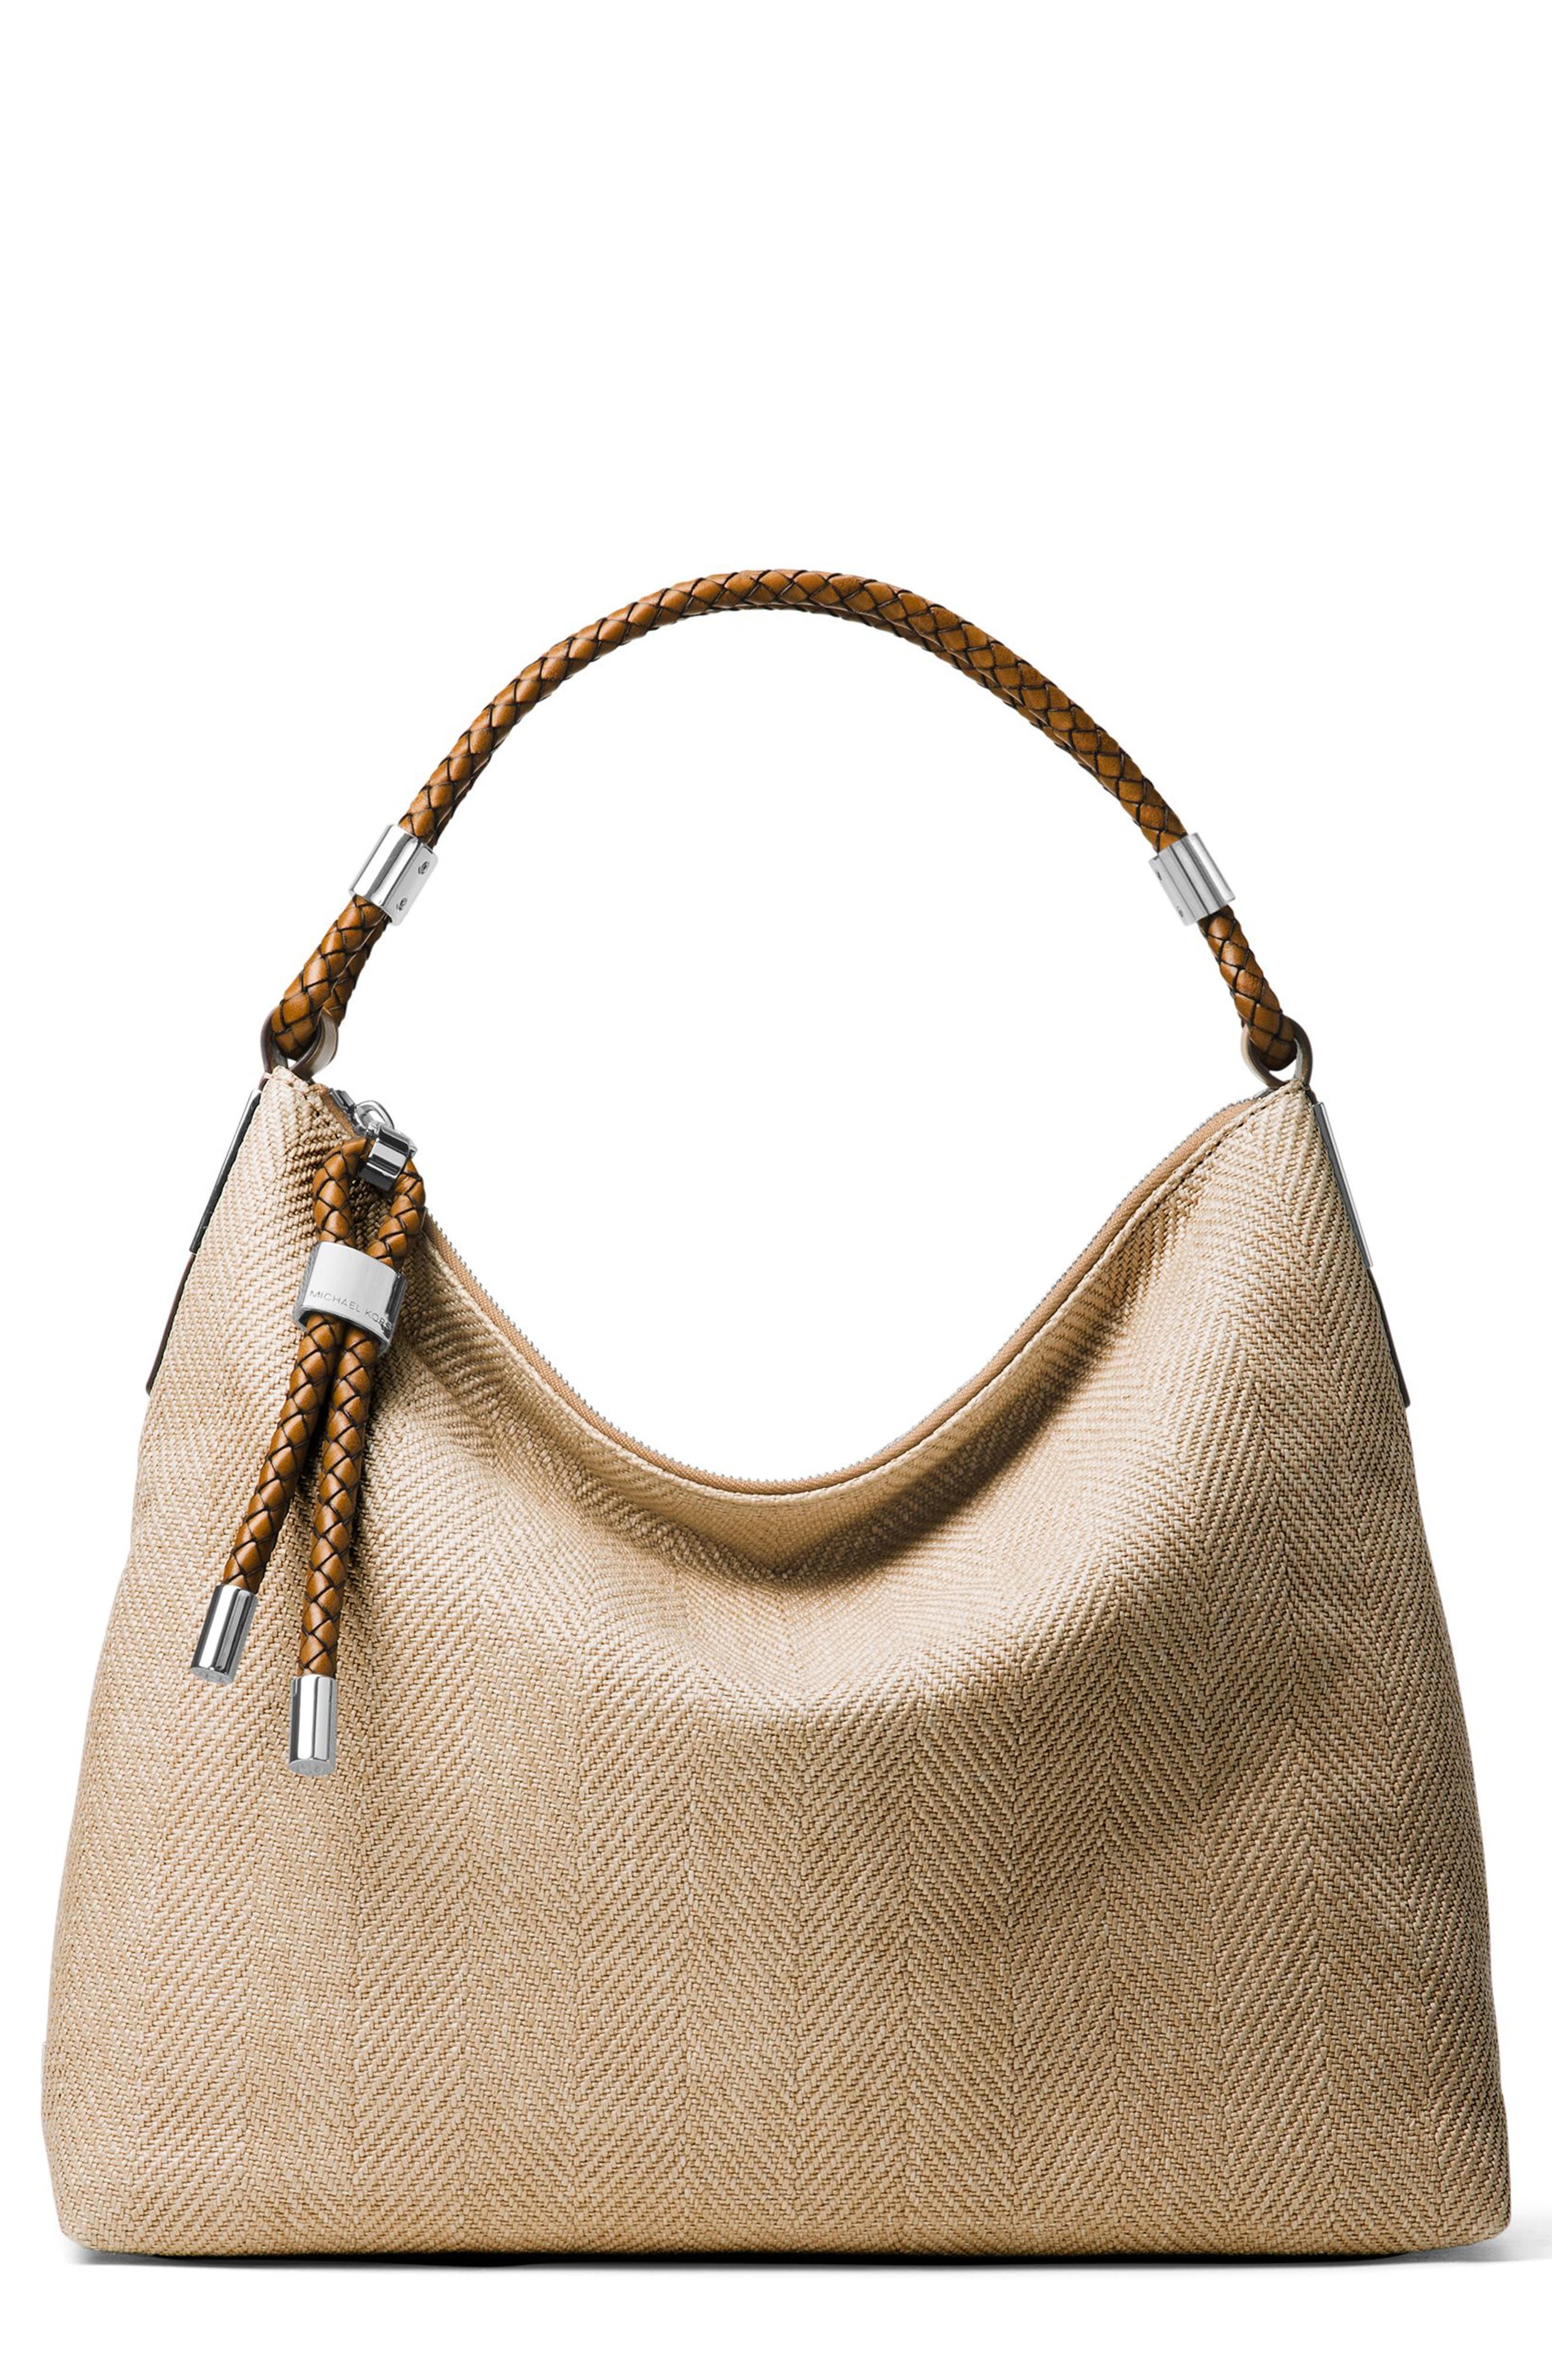 Women's Michael Kors Handbags | Nordstrom